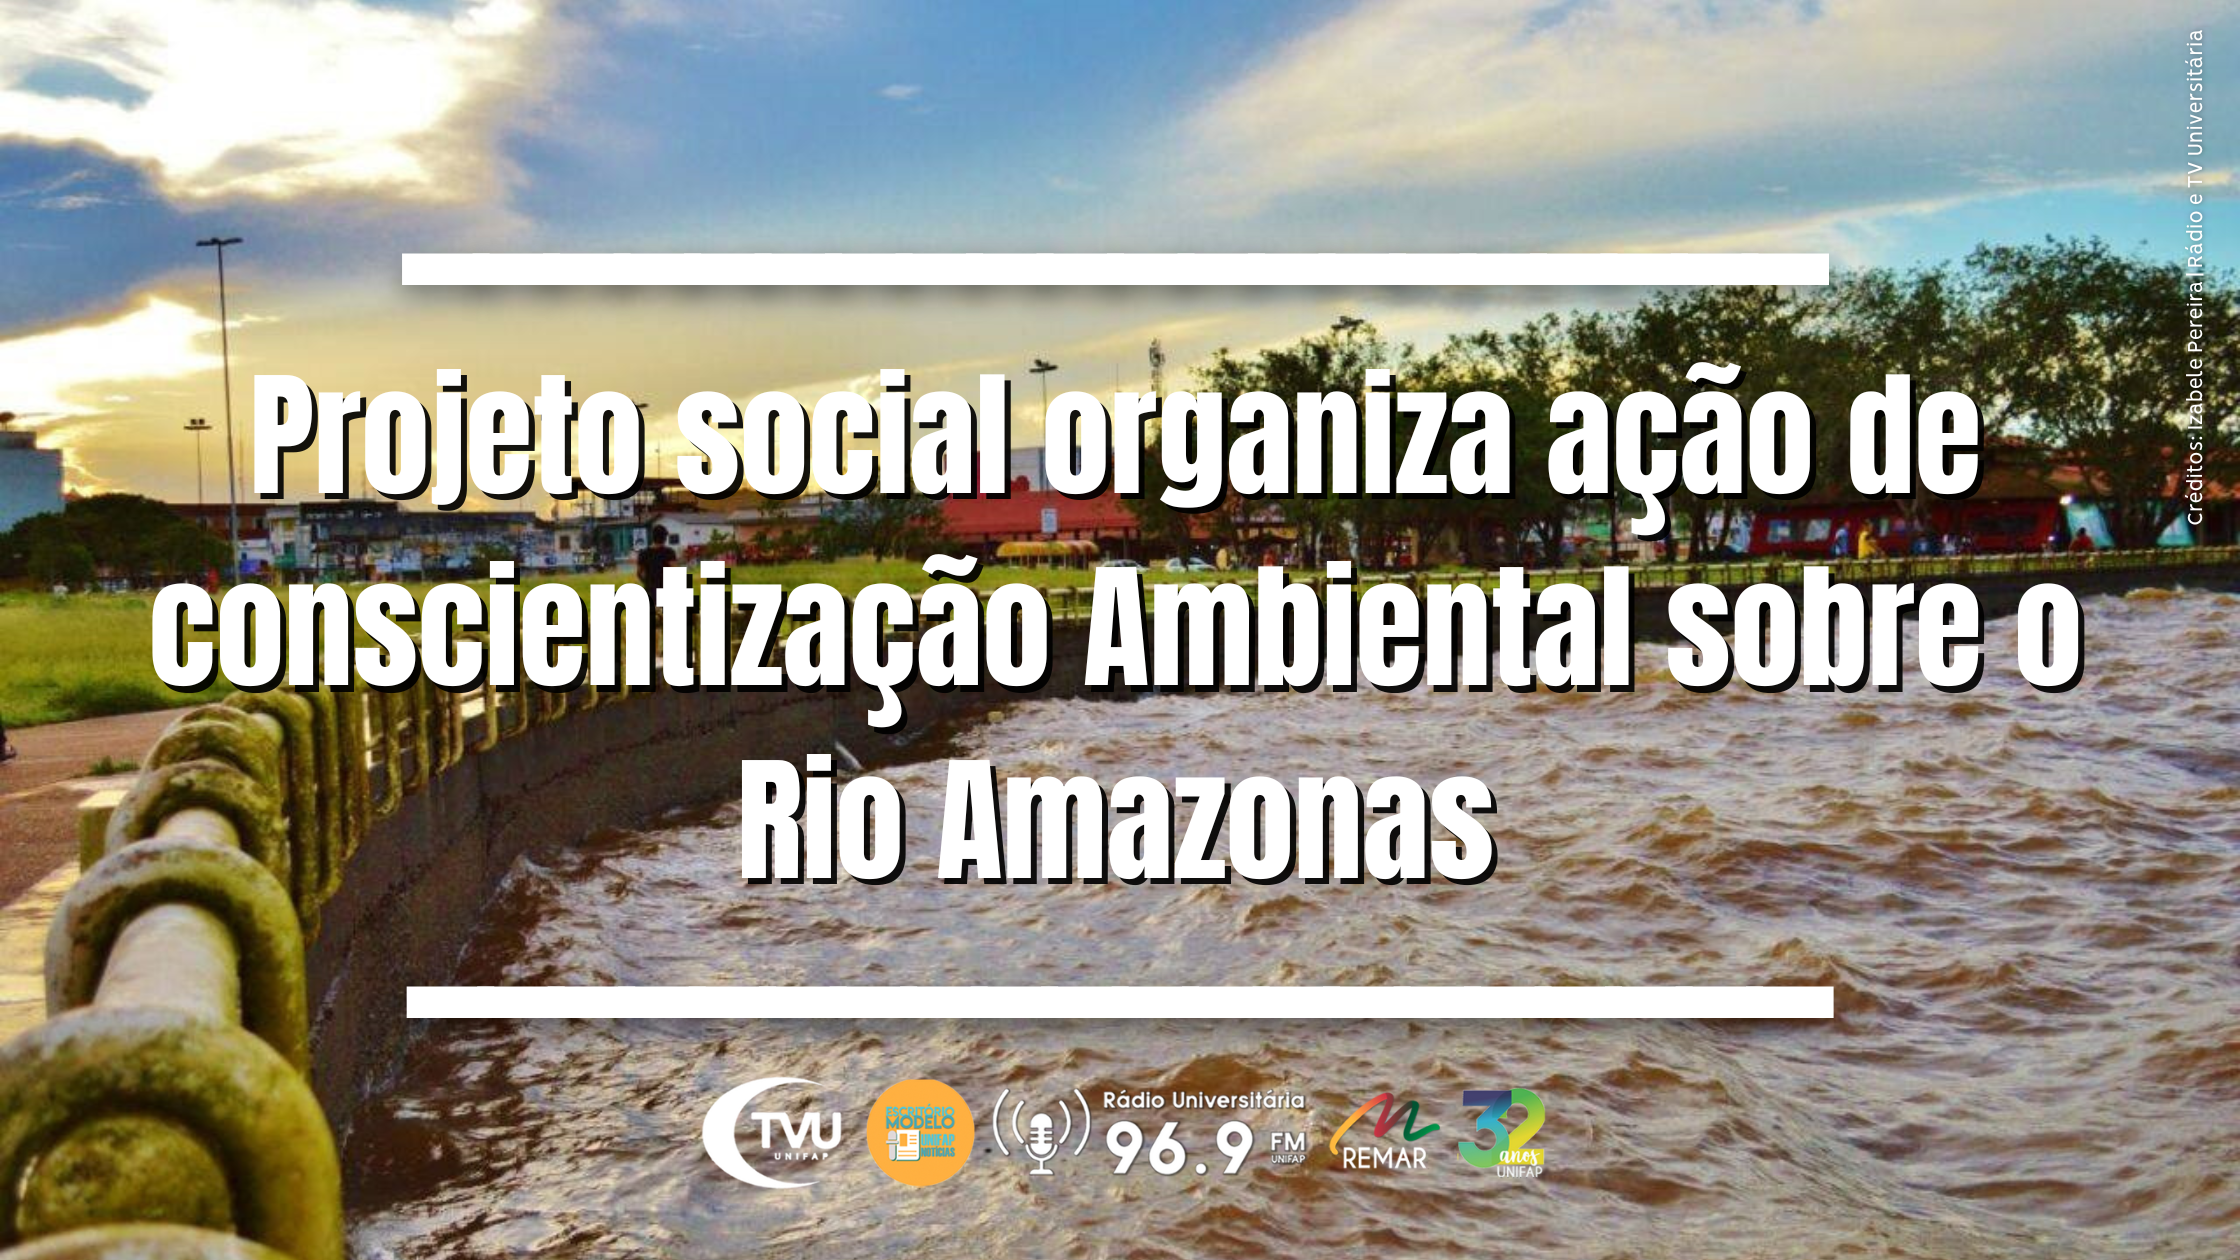 Projeto social organiza ação de conscientização Ambiental sobre o Rio Amazonas